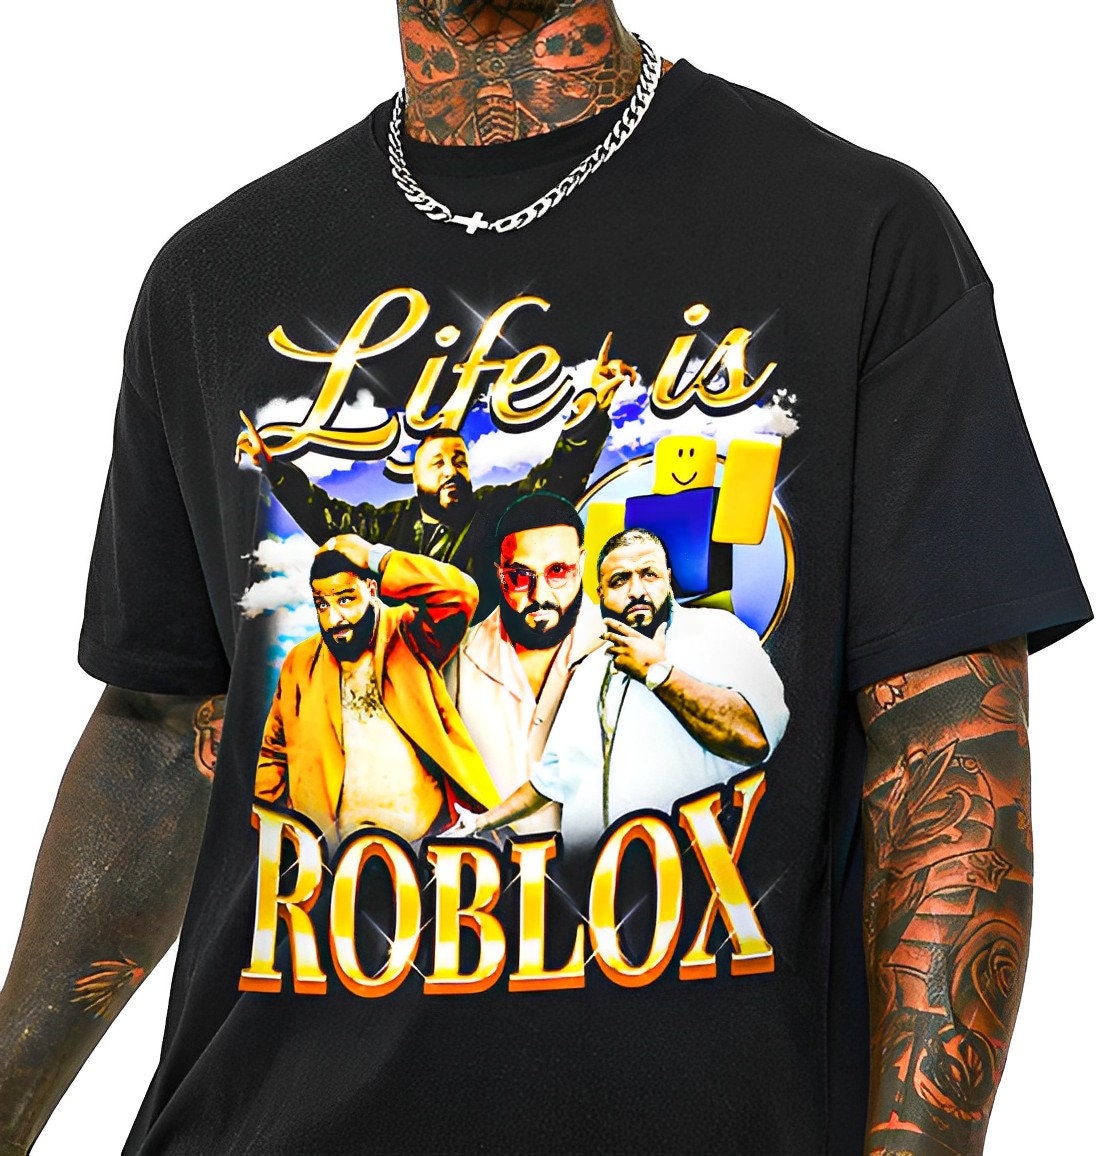 cute roblox t shirt ideas in 2023